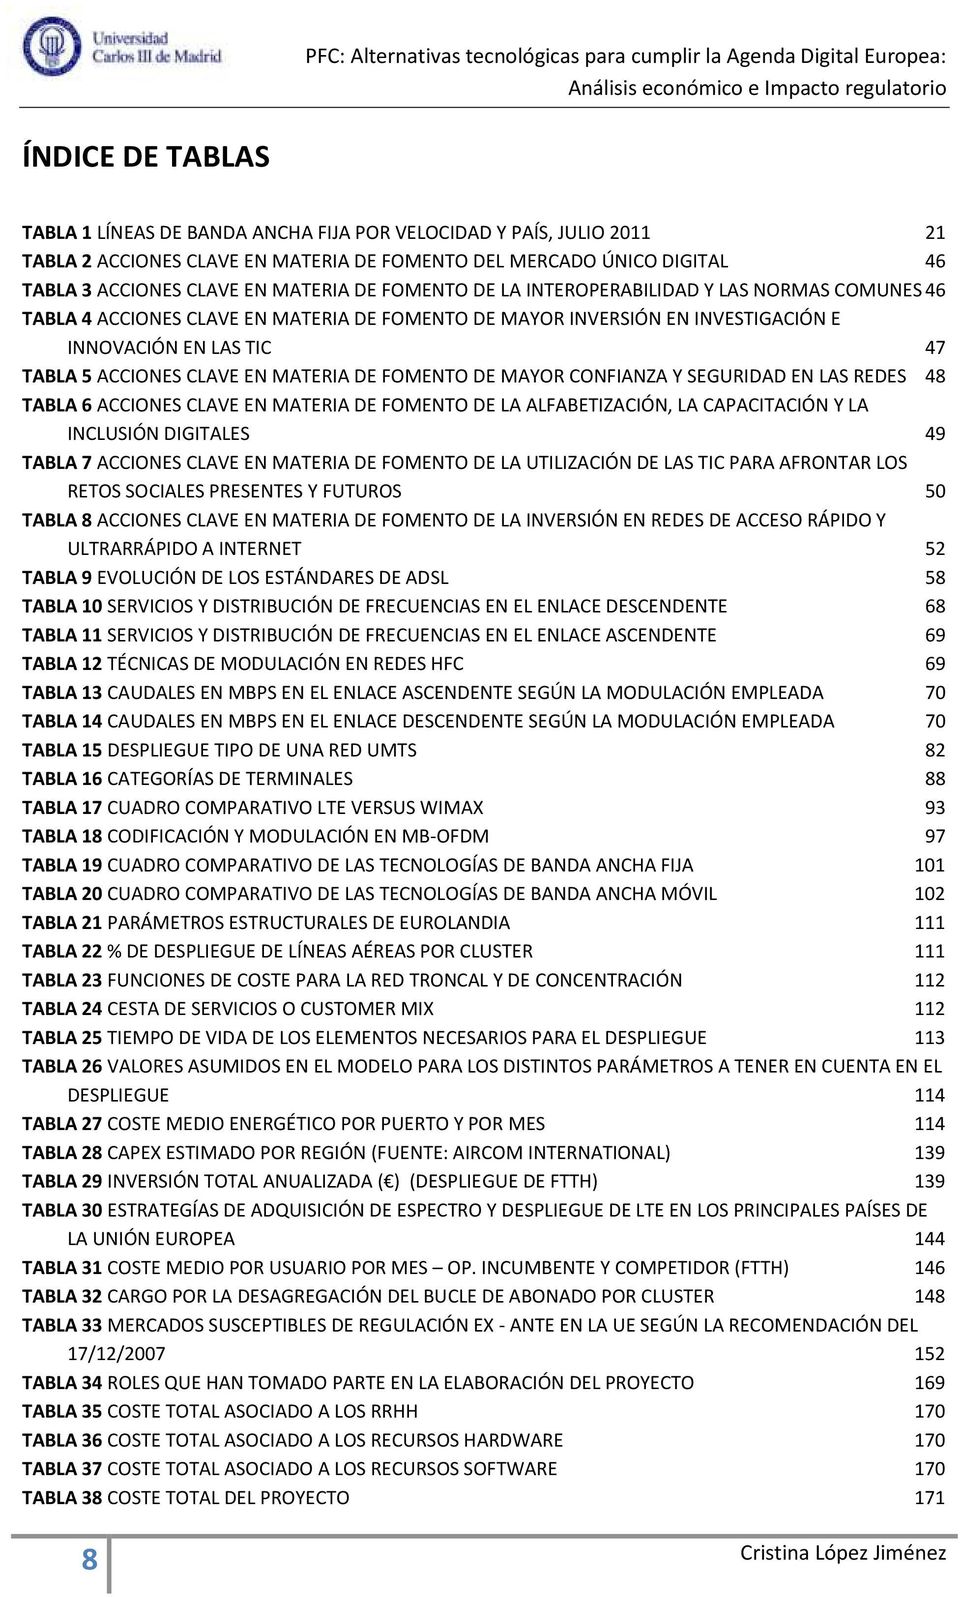 DE FOMENTO DE MAYOR CONFIANZA Y SEGURIDAD EN LAS REDES 48 TABLA 6 ACCIONES CLAVE EN MATERIA DE FOMENTO DE LA ALFABETIZACIÓN, LA CAPACITACIÓN Y LA INCLUSIÓN DIGITALES 49 TABLA 7 ACCIONES CLAVE EN